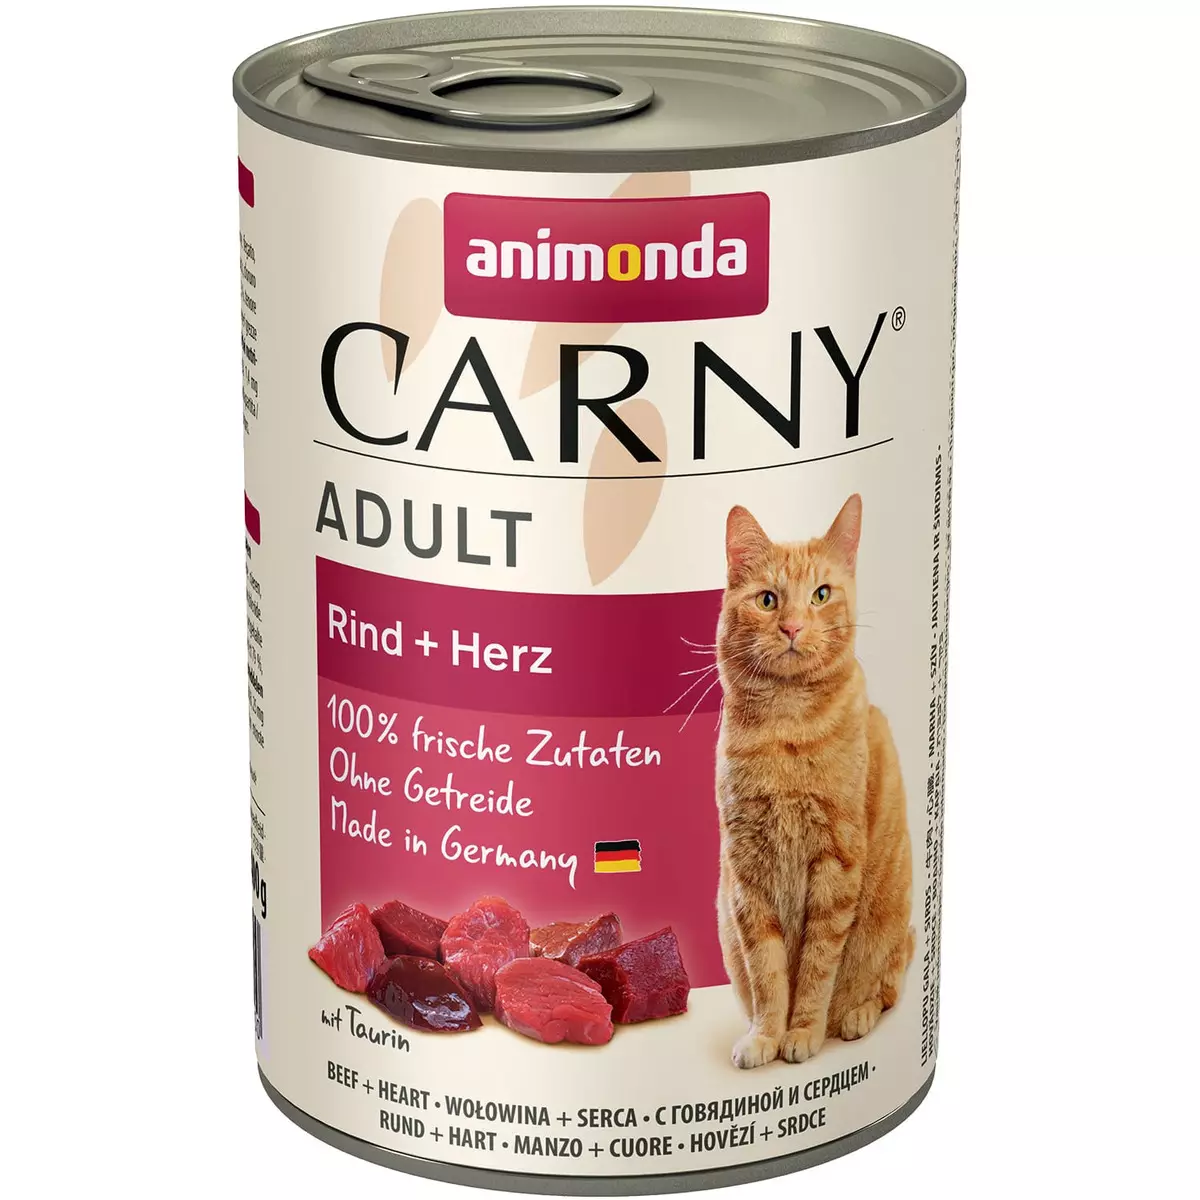 Animonda alimentació: per a gats i gossos, humit i sec, felí aliments enllaunats per a gats adults i gatets, la composició i les revisions 22112_15